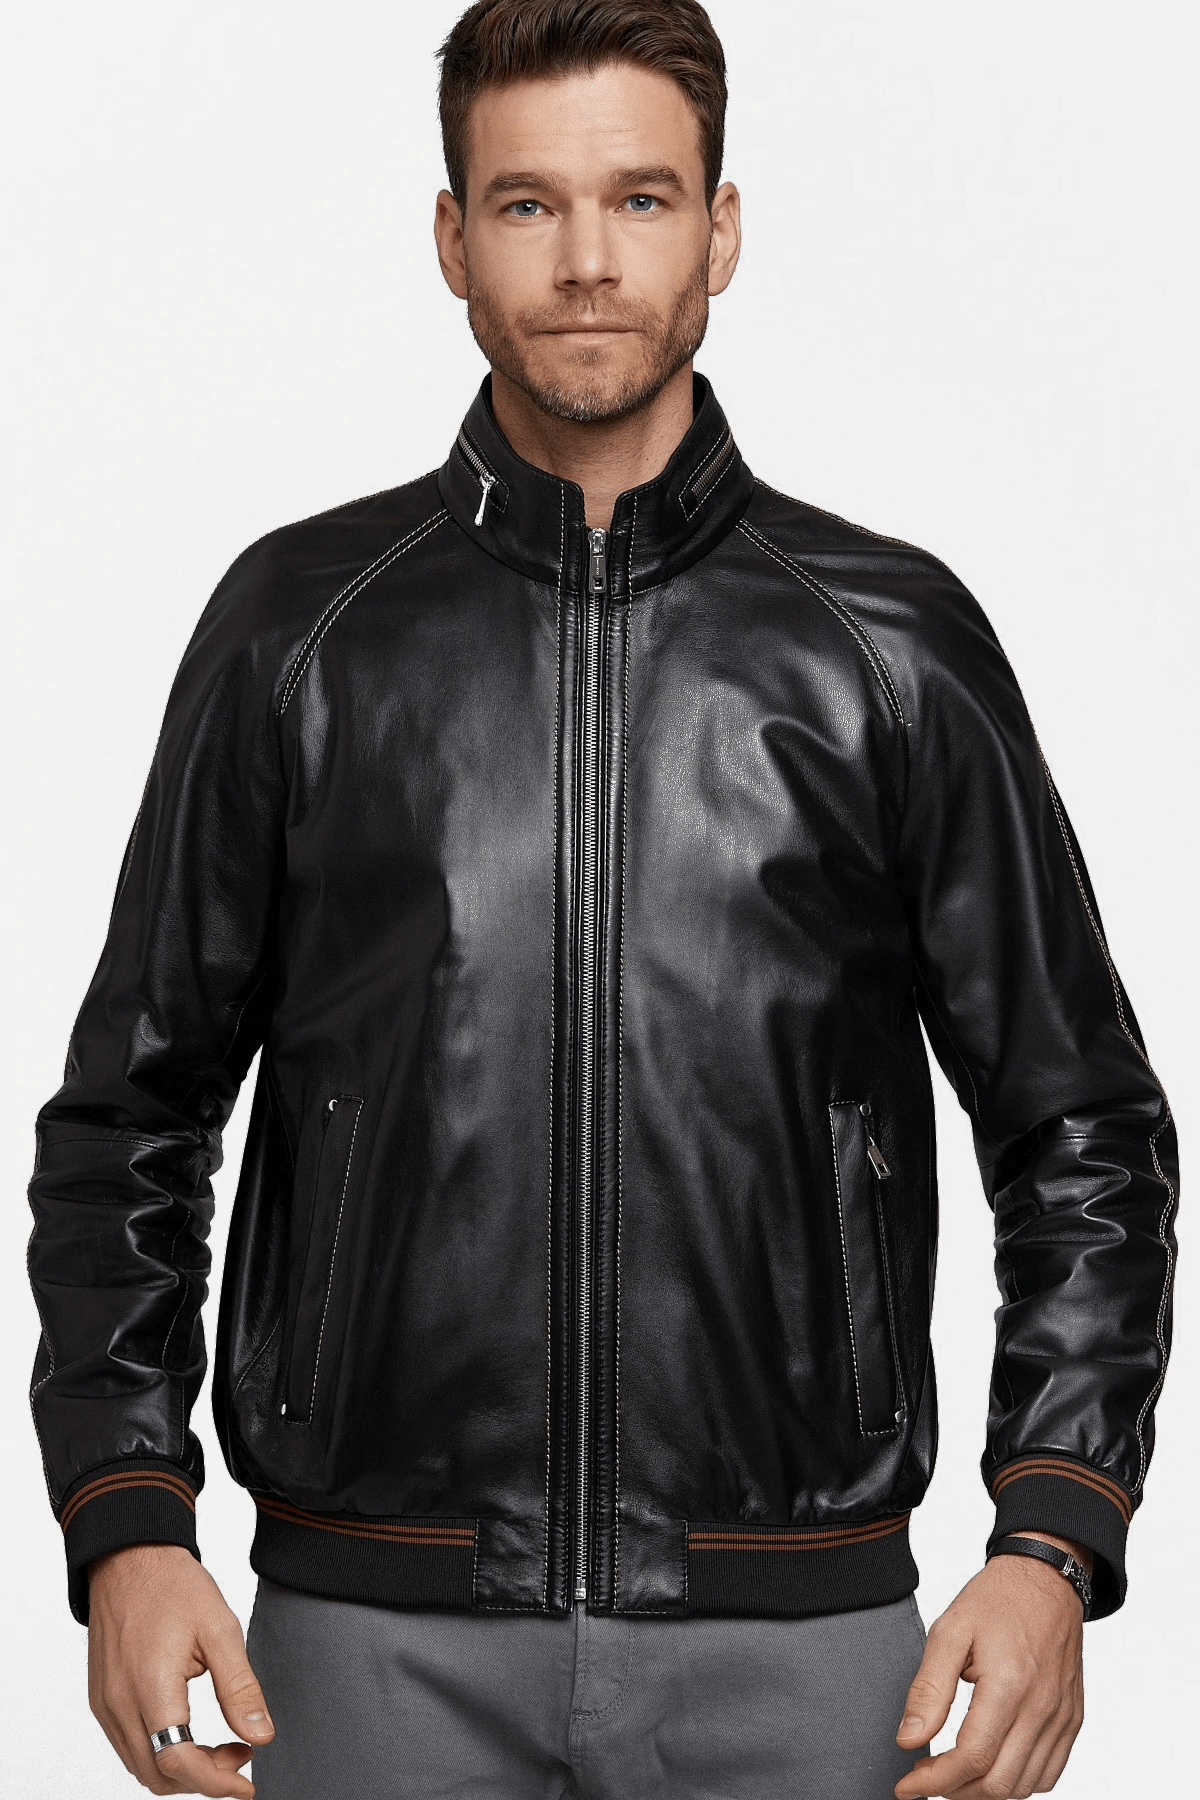 Costa Black Leather Jacket - AirBorne Jacket